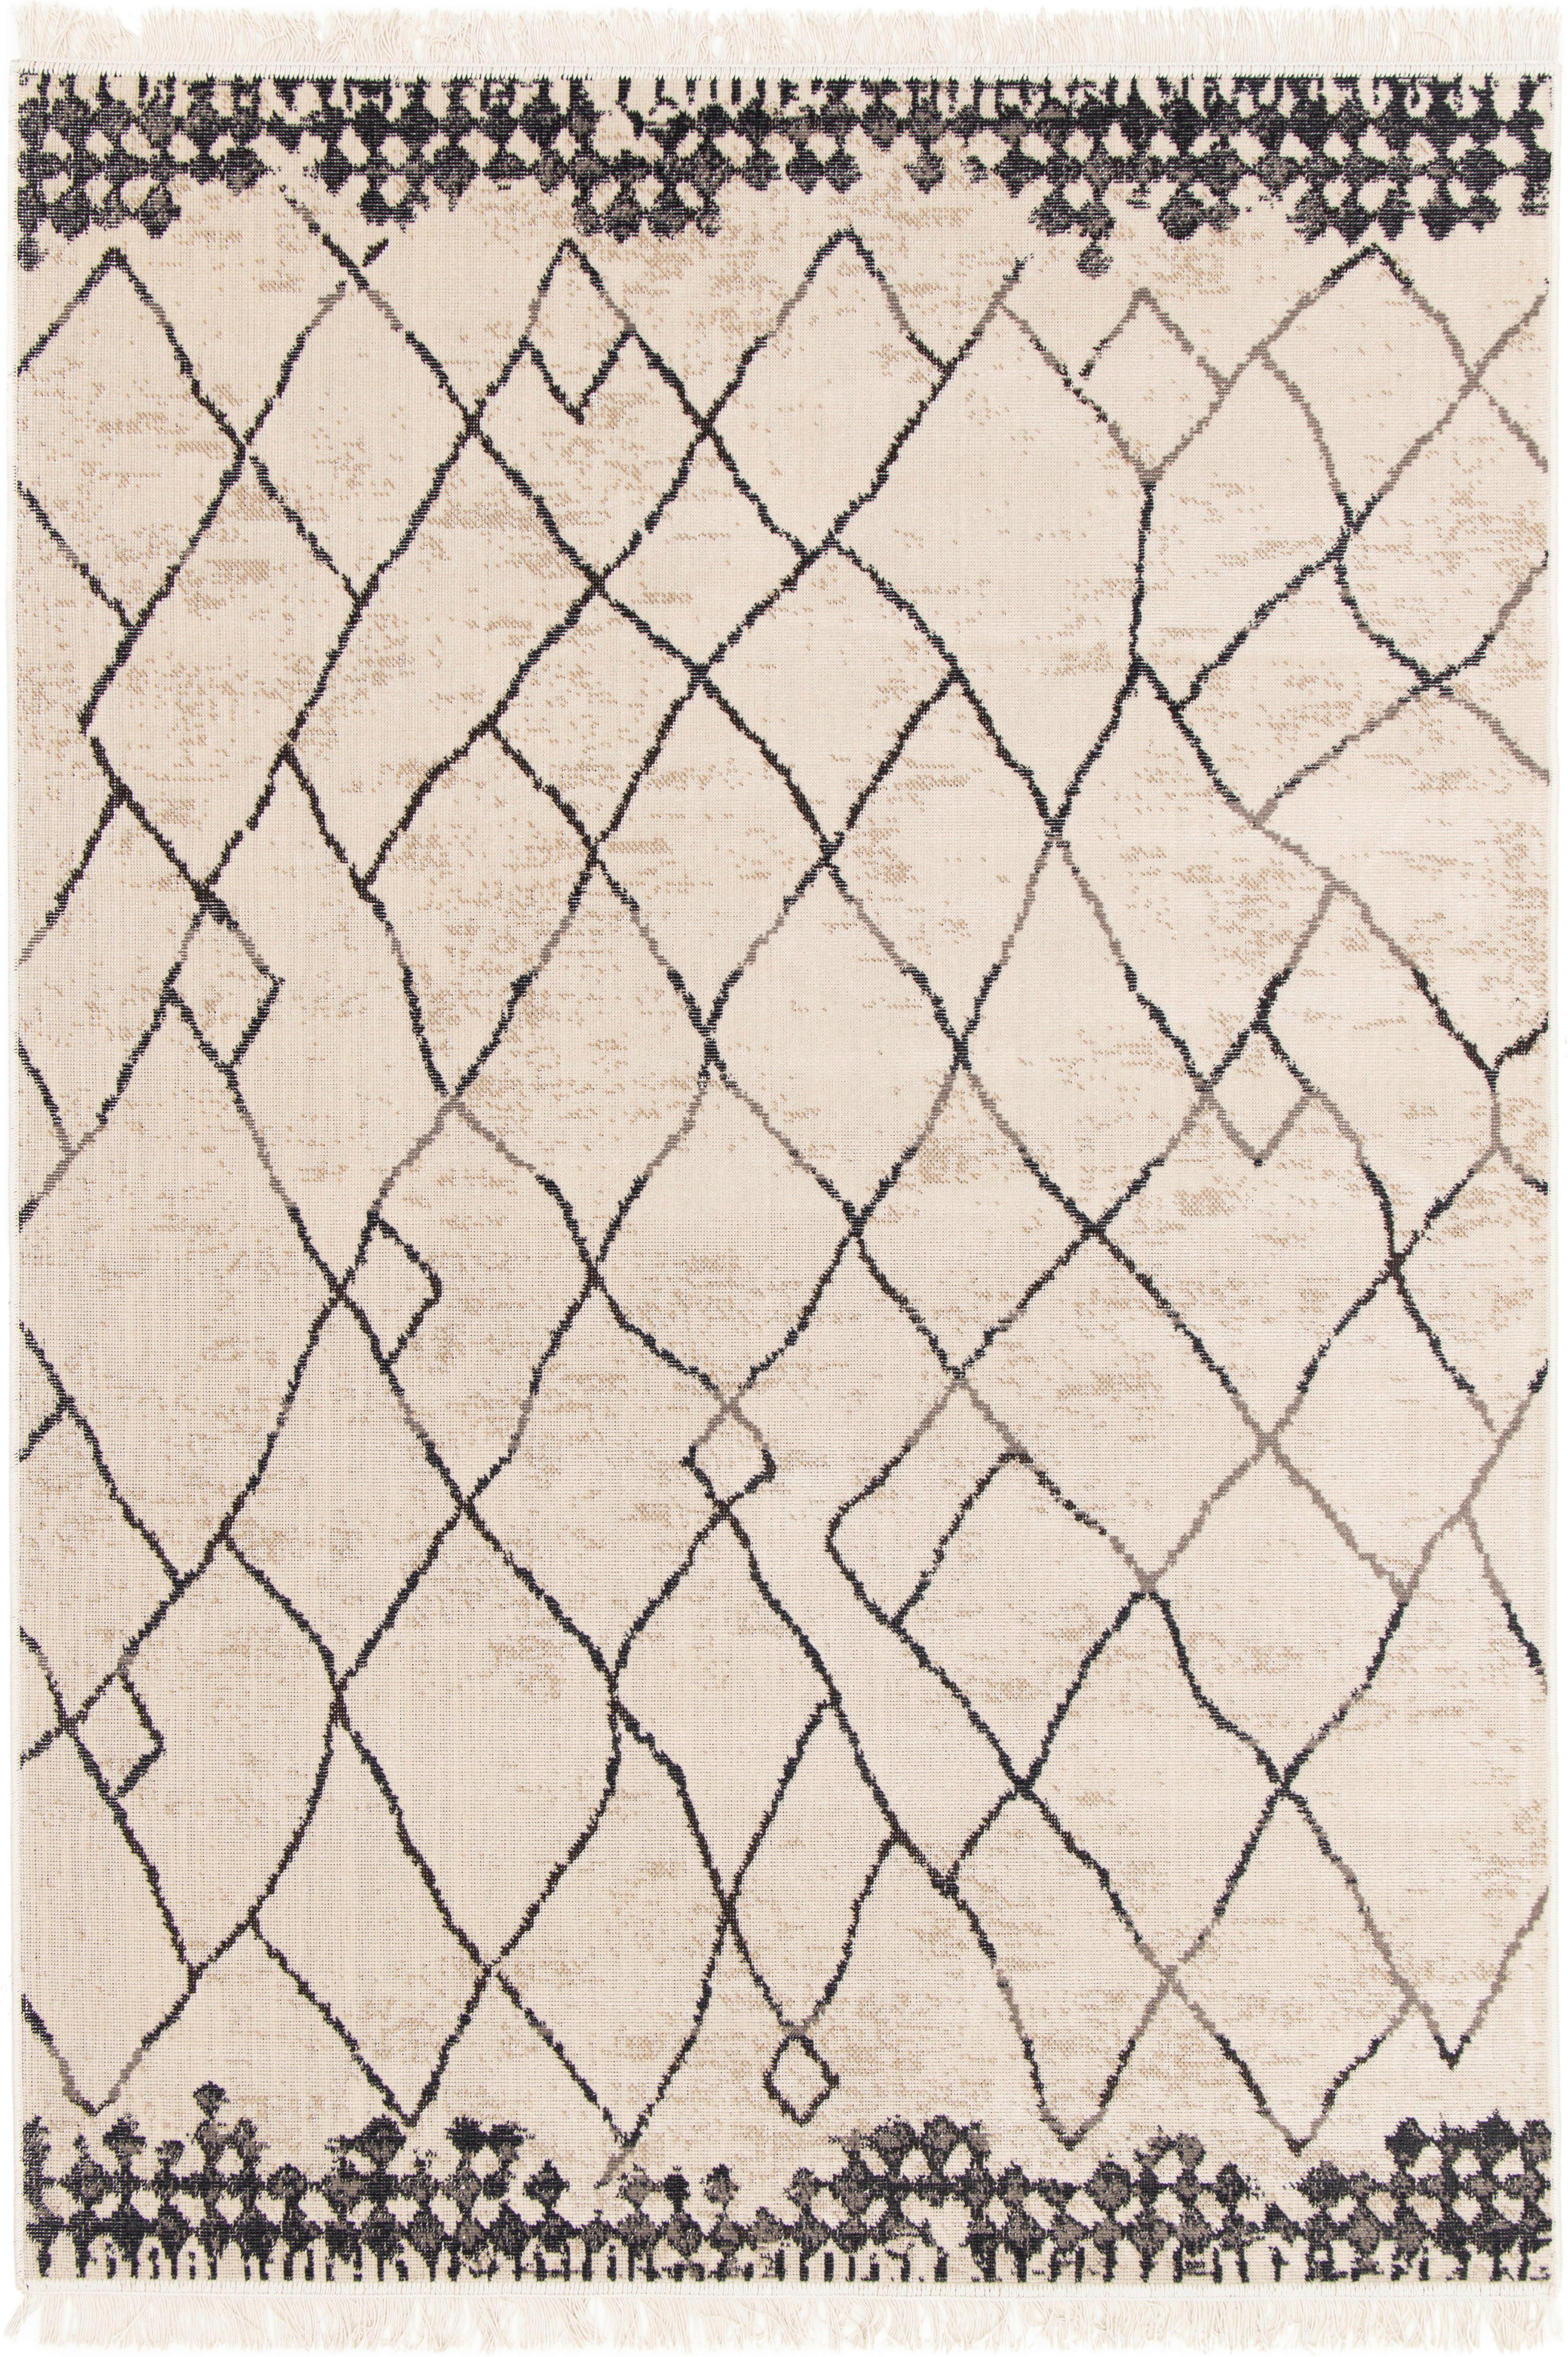 Koberec Tkaný Na Plocho Berclon 3, 160/230cm - krémová/antracitová, Moderní, textil (160/230cm) - Modern Living